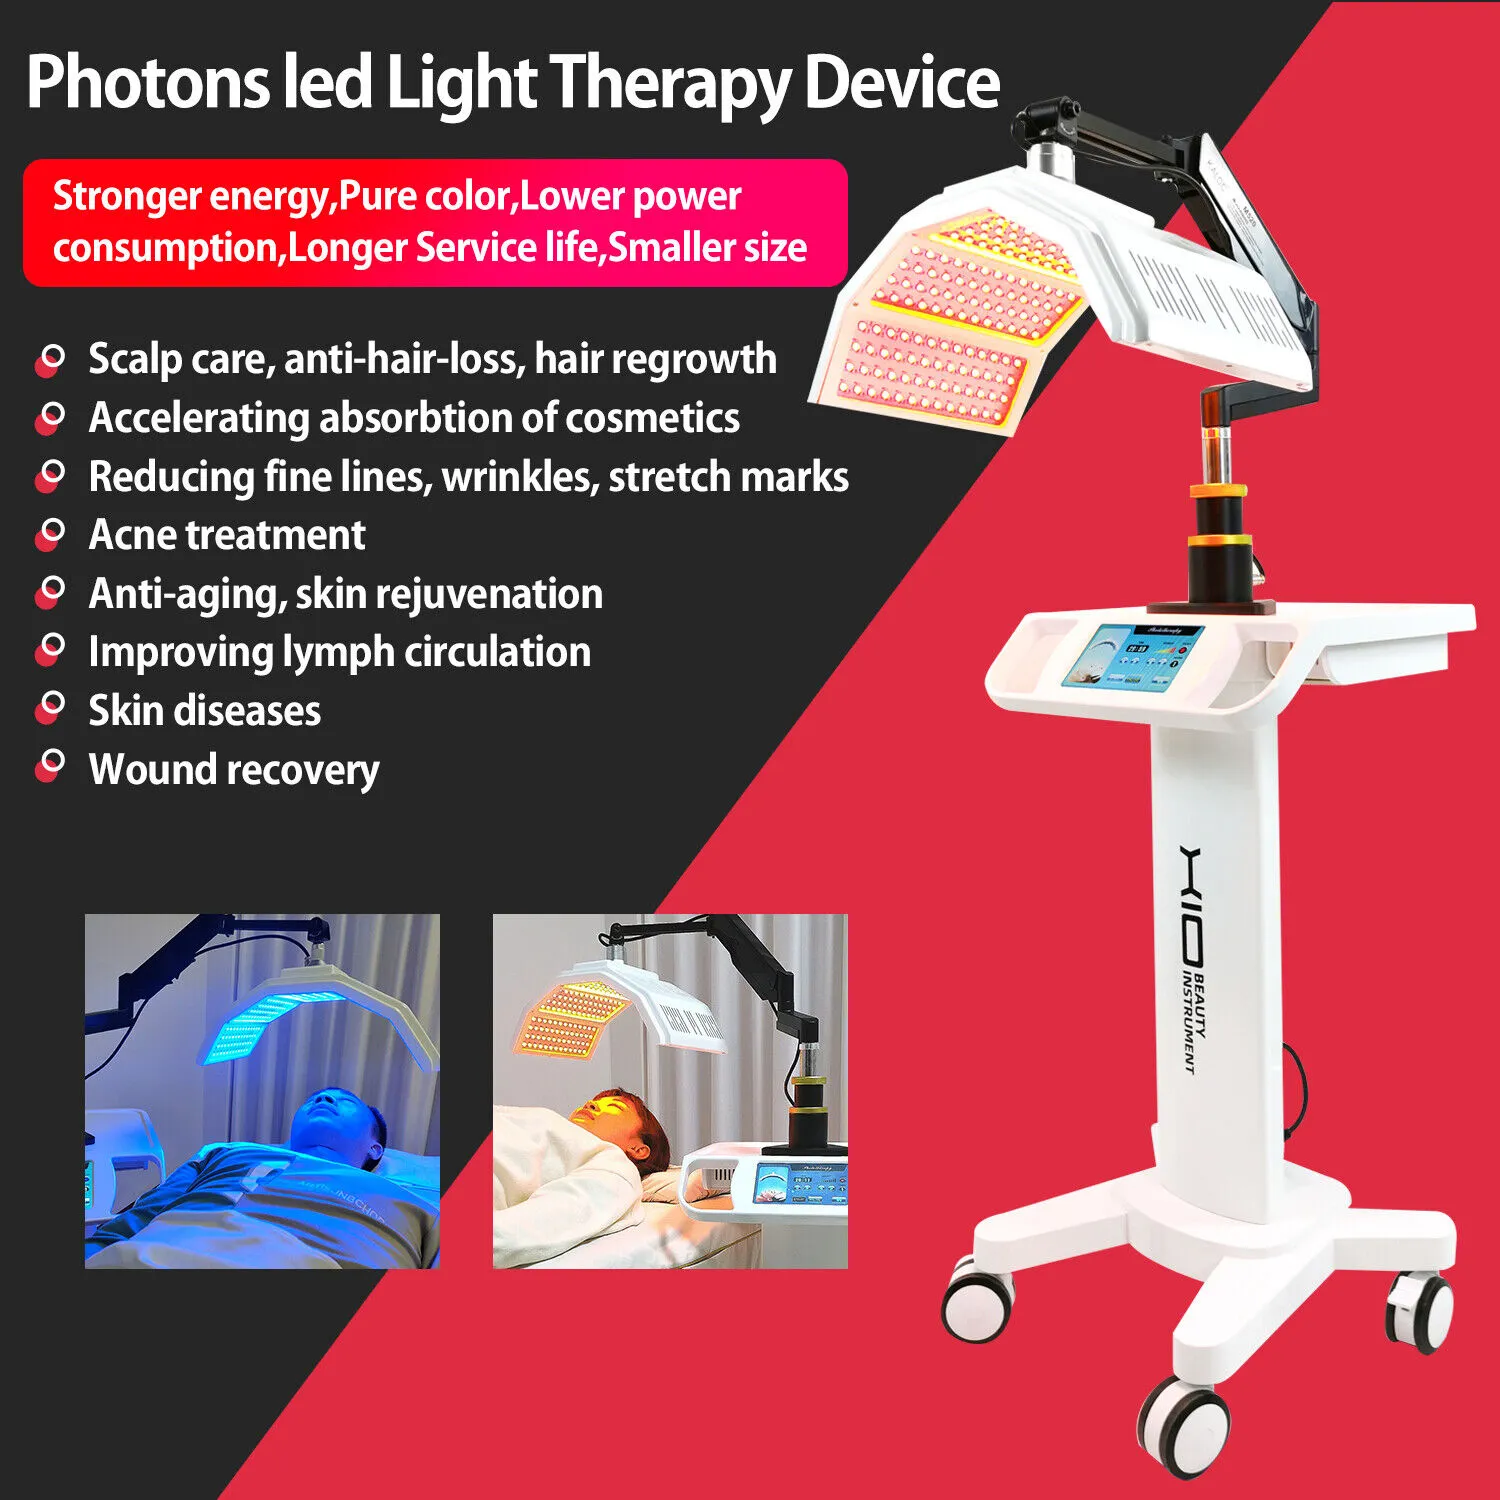 Fototerapia luz led máquina de beleza rejuvenescimento da pele cuidados faciais anti rugas aperto da pele